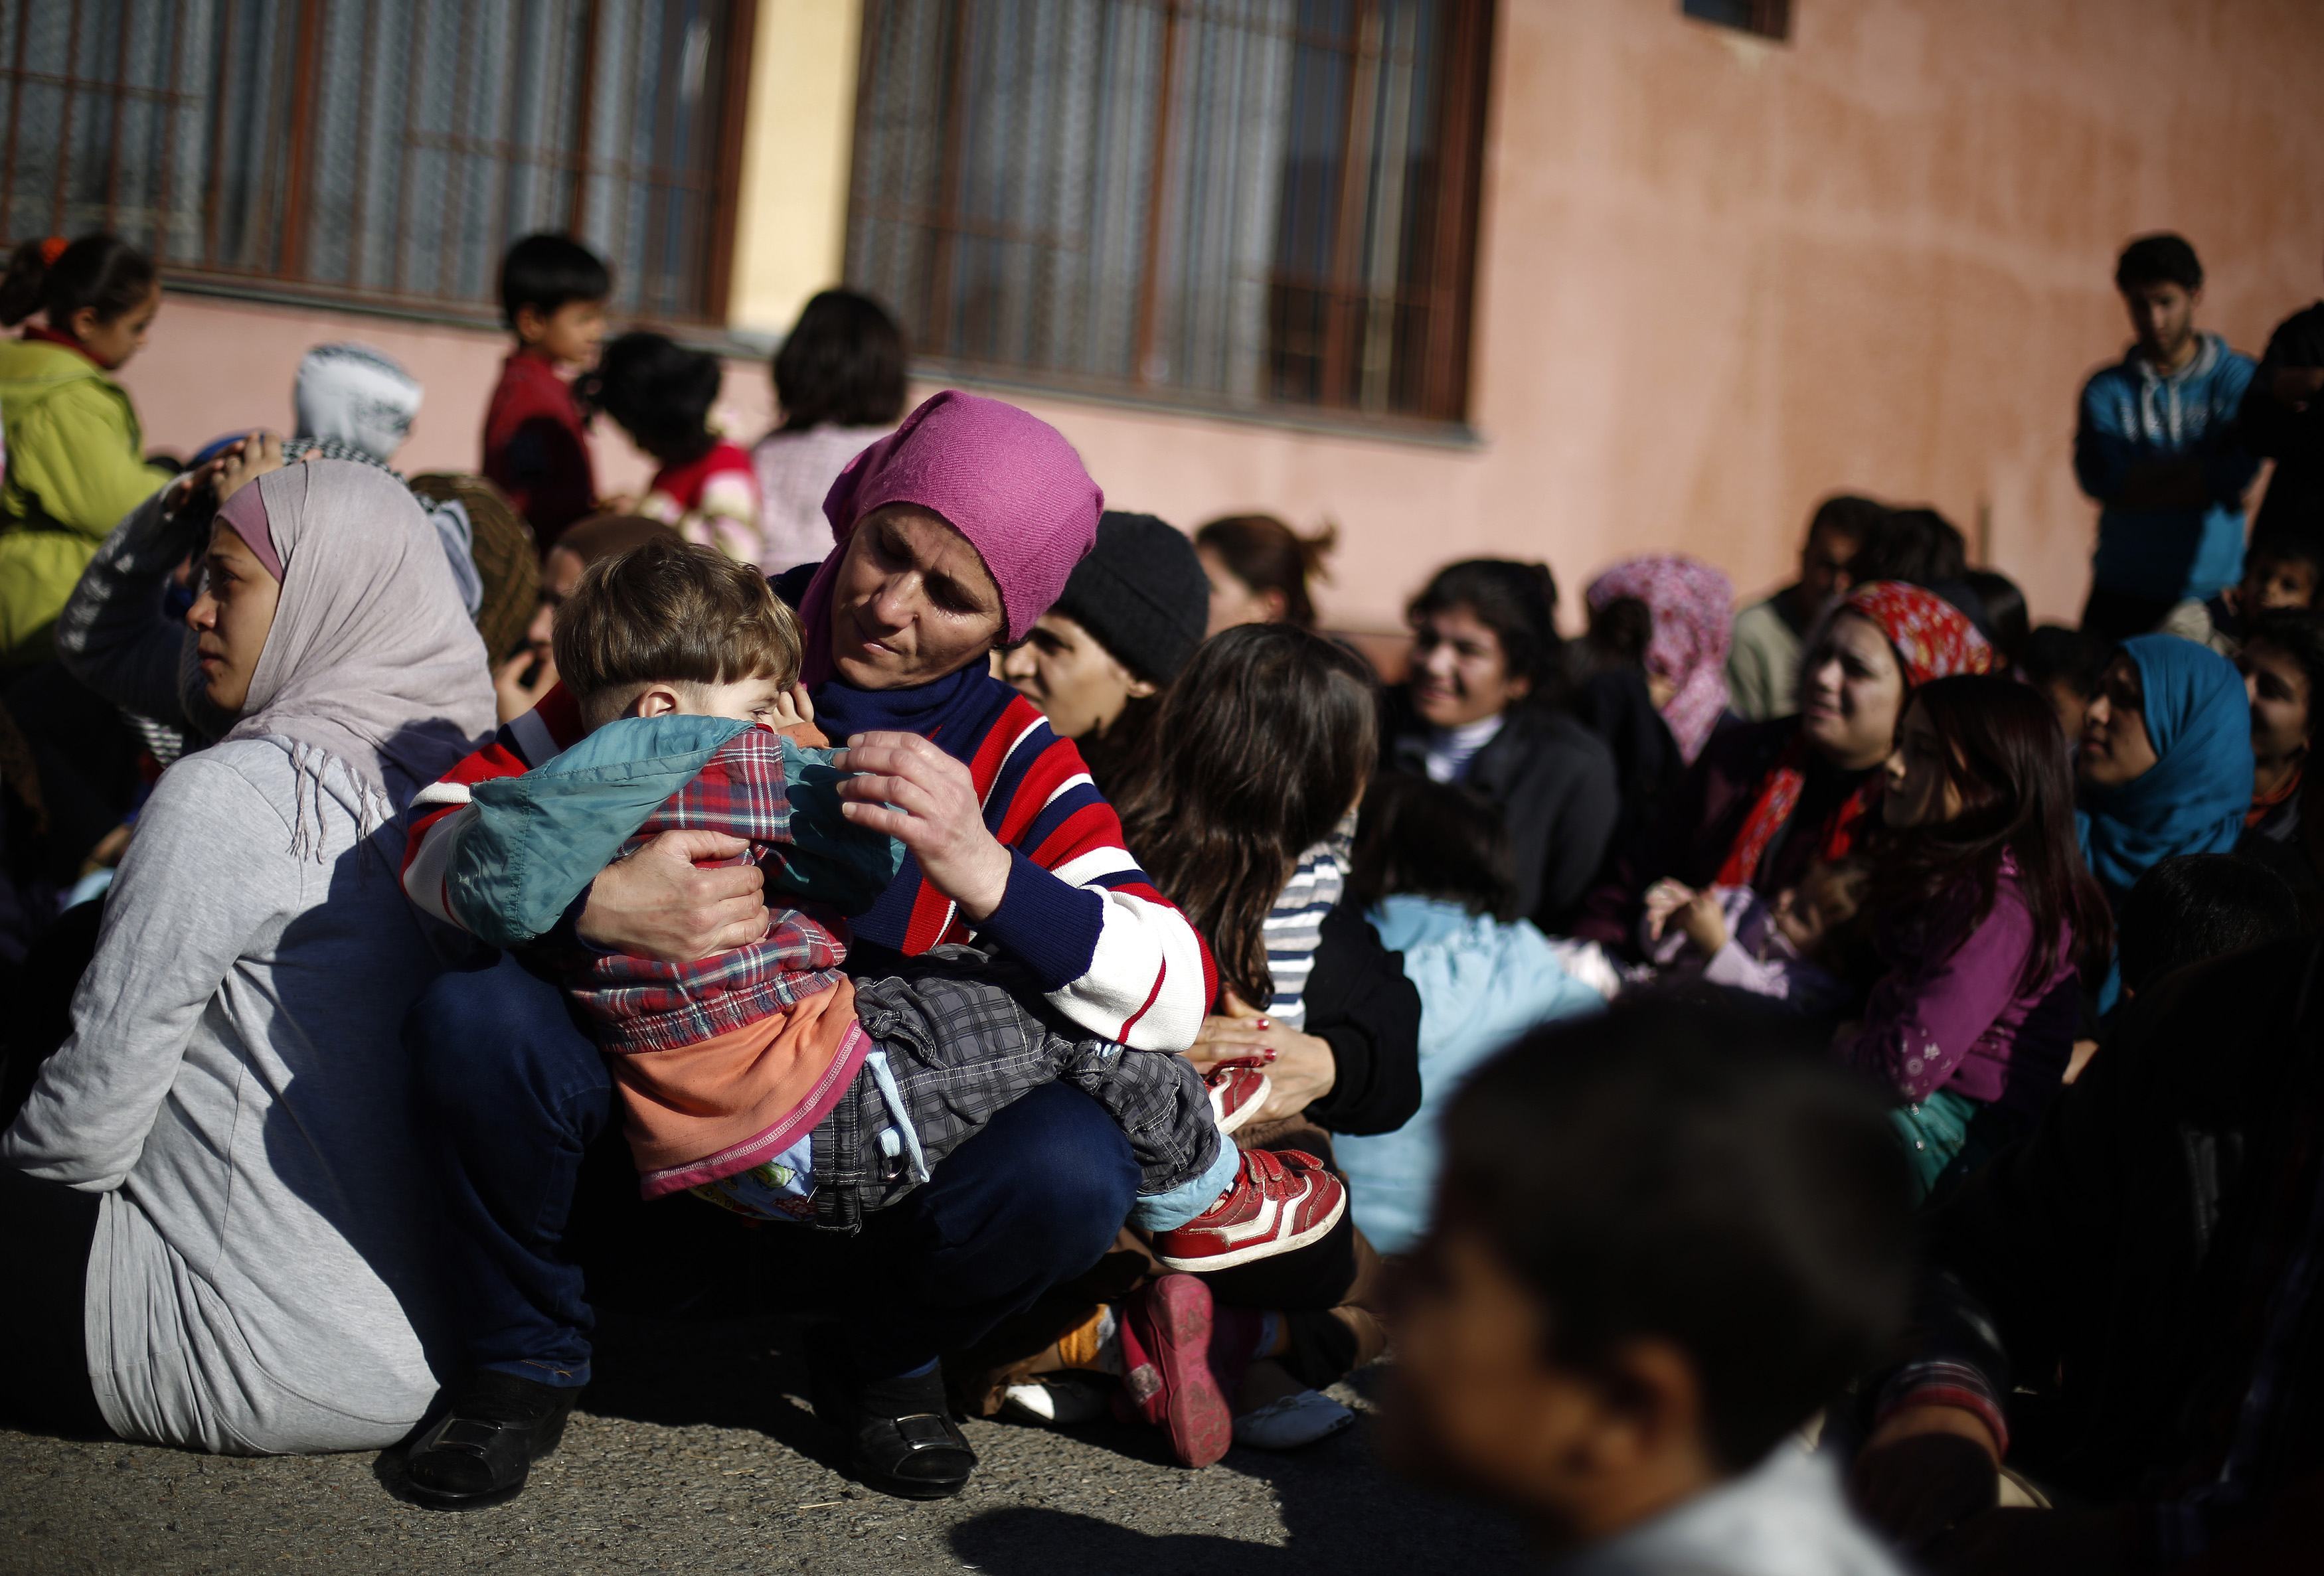 Βουλγαρία: Τα 2/3 των Σύρων προσφύγων δηλώνουν έτοιμοι να επιστρέψουν στη χώρα τους, αν τερματιστούν οι συγκρούσεις